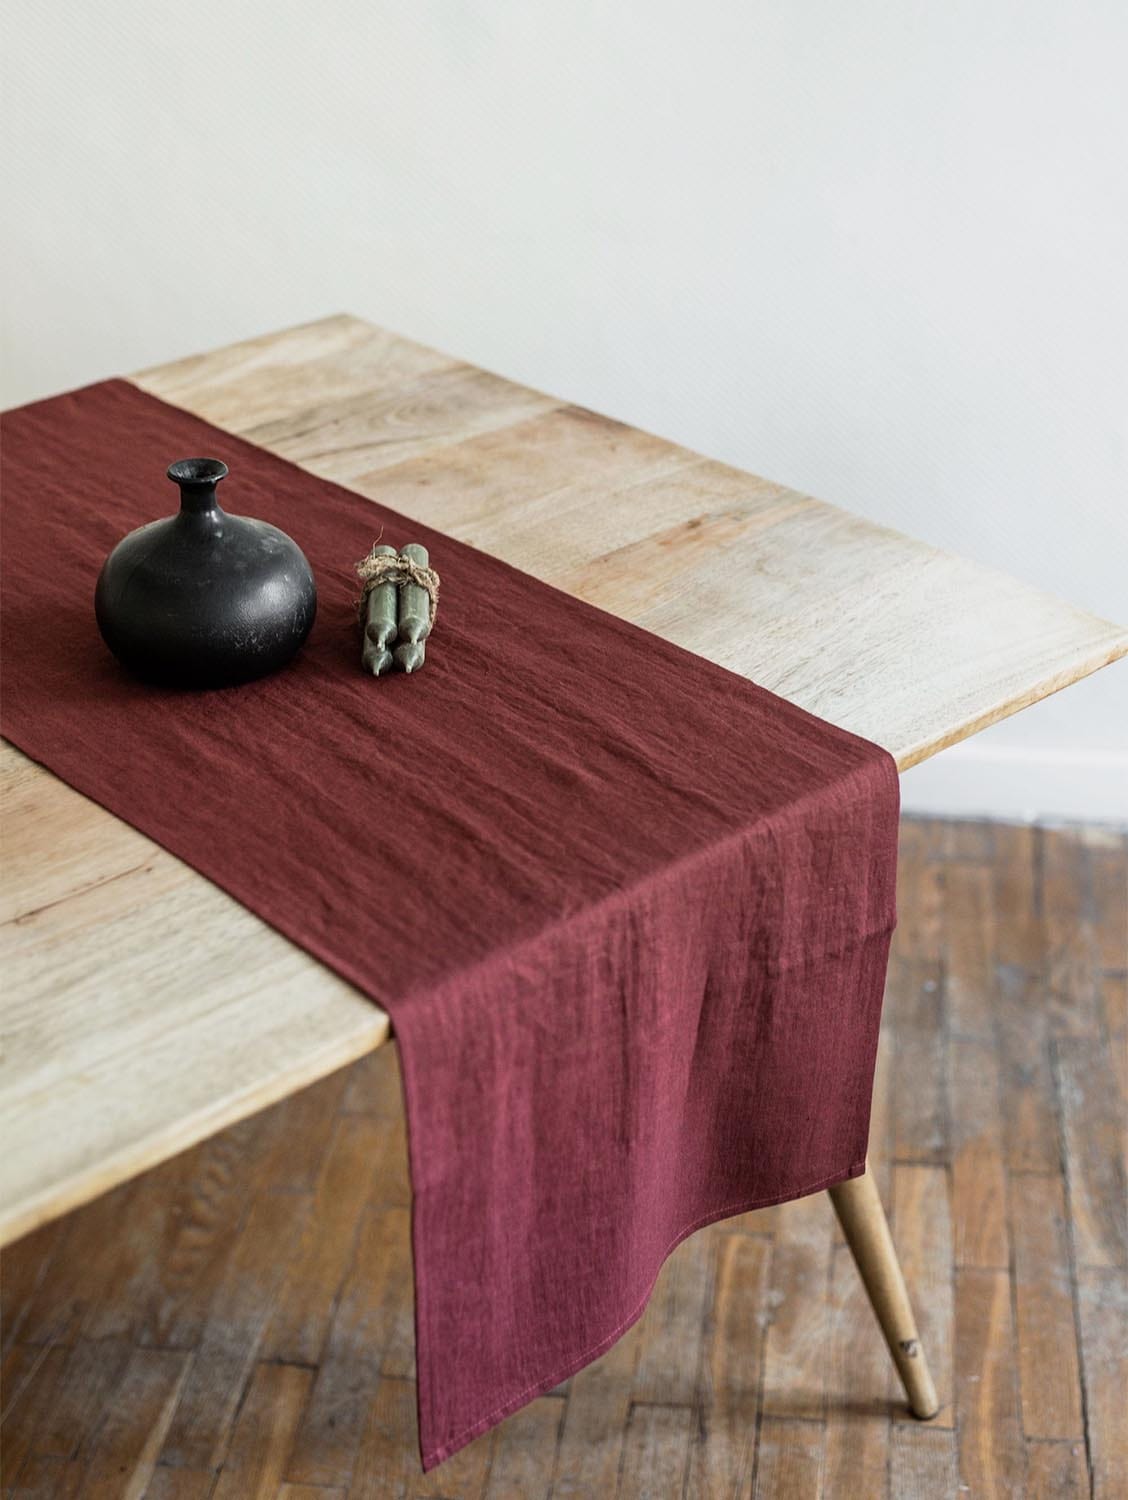 AmourLinen Linen table runner in Terracotta 40x150 cm / 16x59" / Terracotta